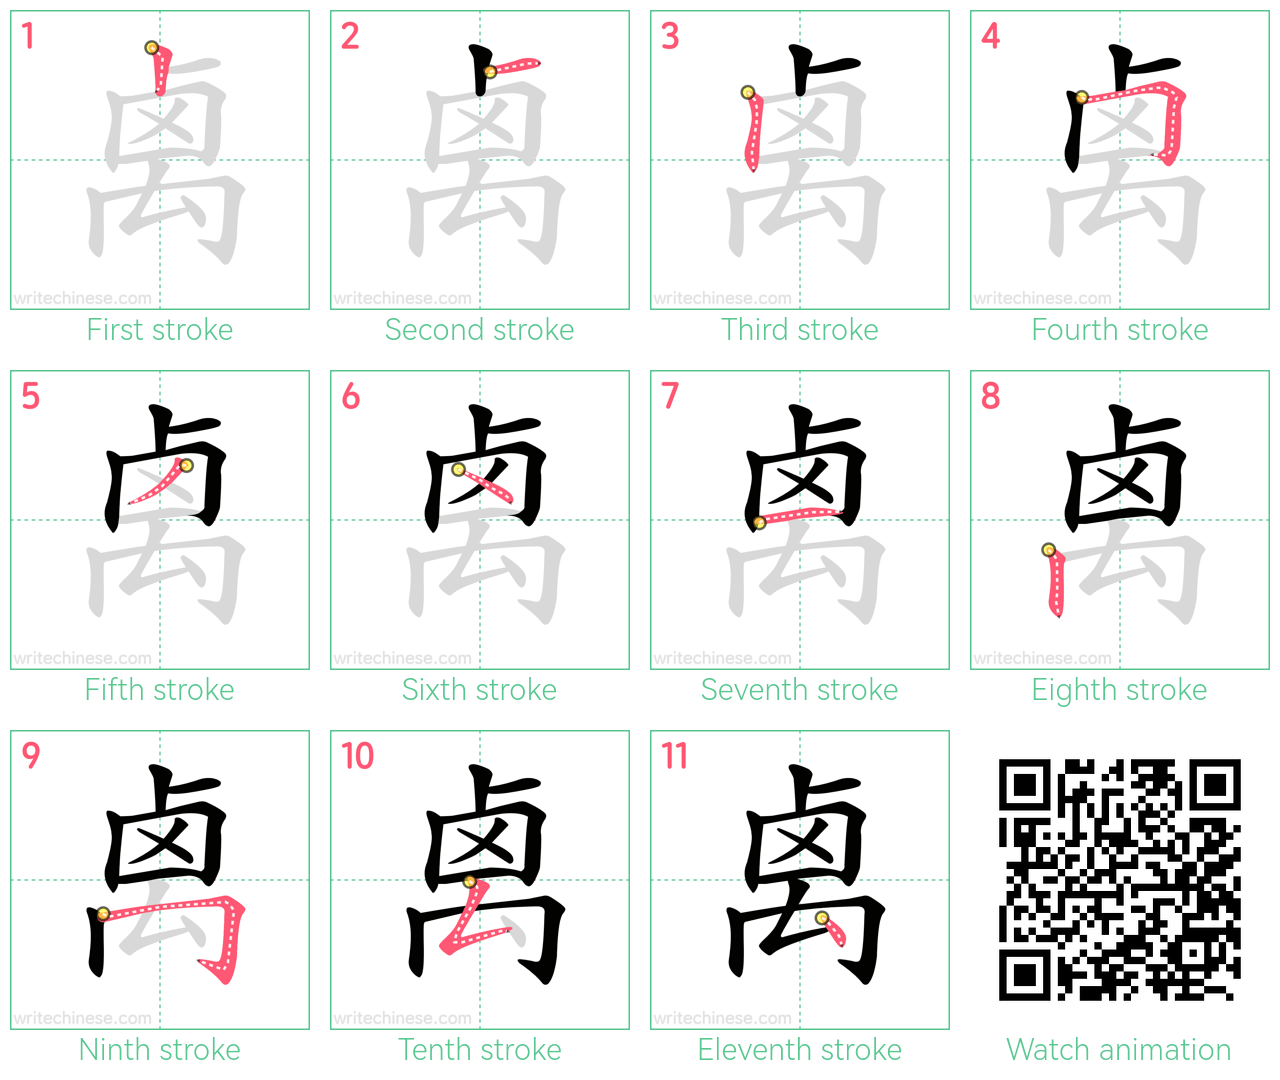 禼 step-by-step stroke order diagrams